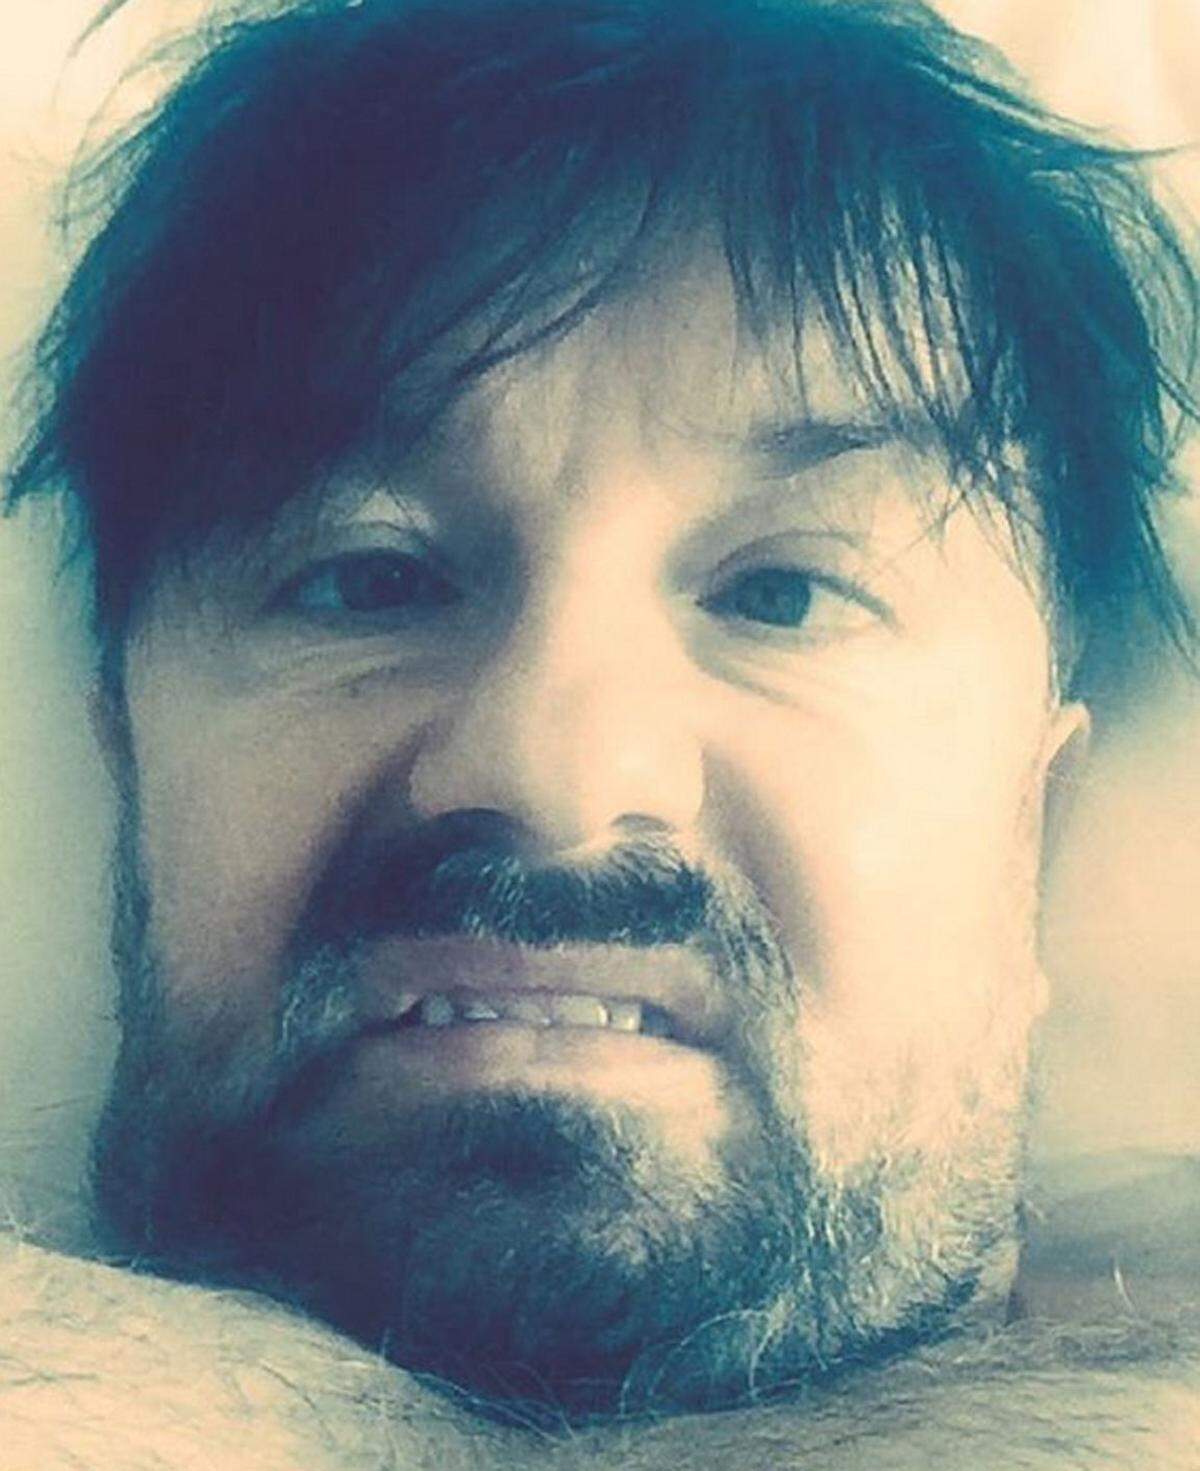 Und hier haben wir das hübsche Gesicht von Globes-Moderator Ricky Gervais. 